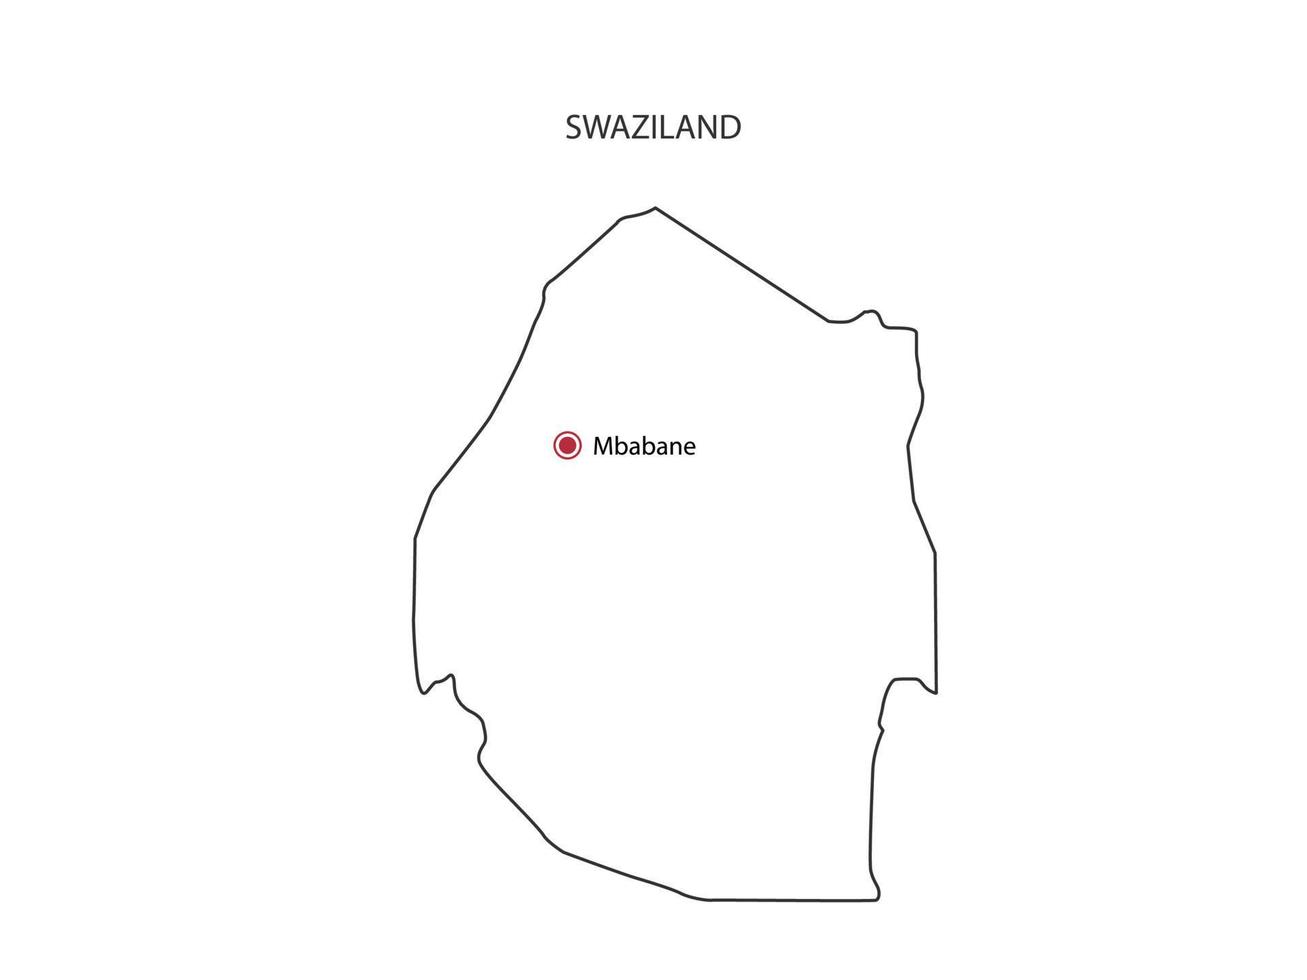 mano disegnare magro nero linea vettore di Swaziland carta geografica con capitale città mbabane su bianca sfondo.